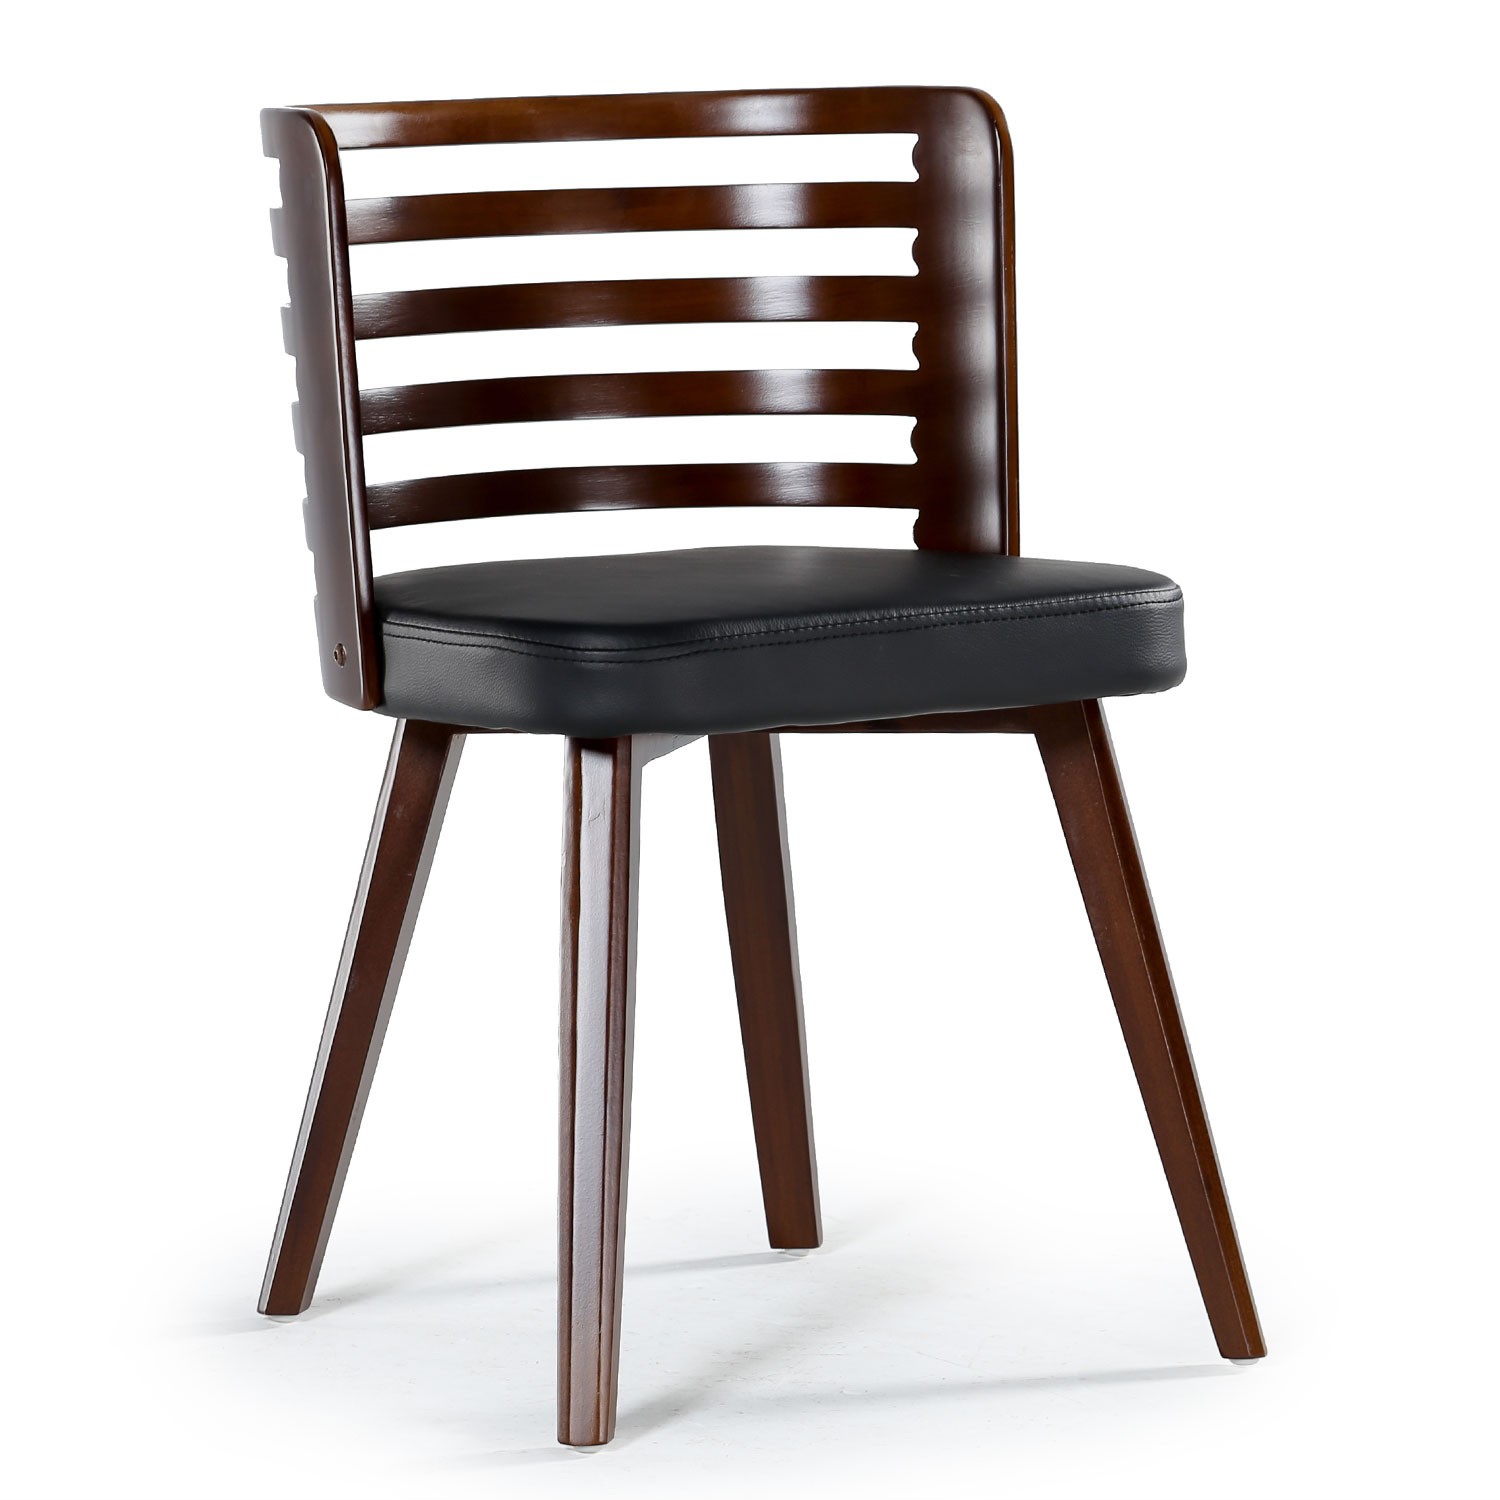 Chaise scandinave en bois naturel ou noir : lot de deux